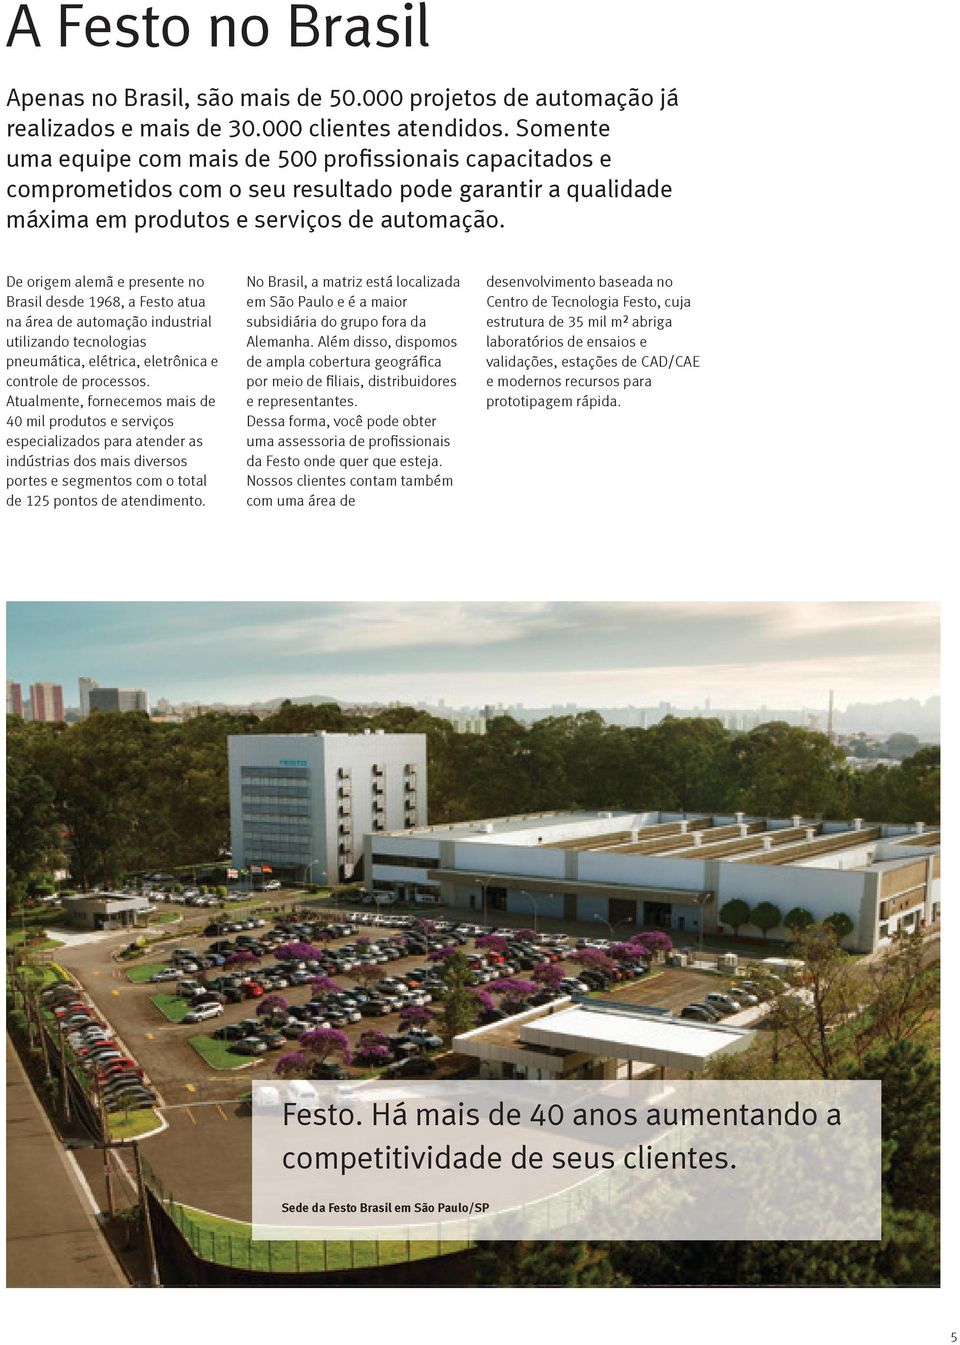 De origem alemã e presente no Brasil desde 1968, a Festo atua na área de automação industrial utilizando tecnologias pneumática, elétrica, eletrônica e controle de processos.